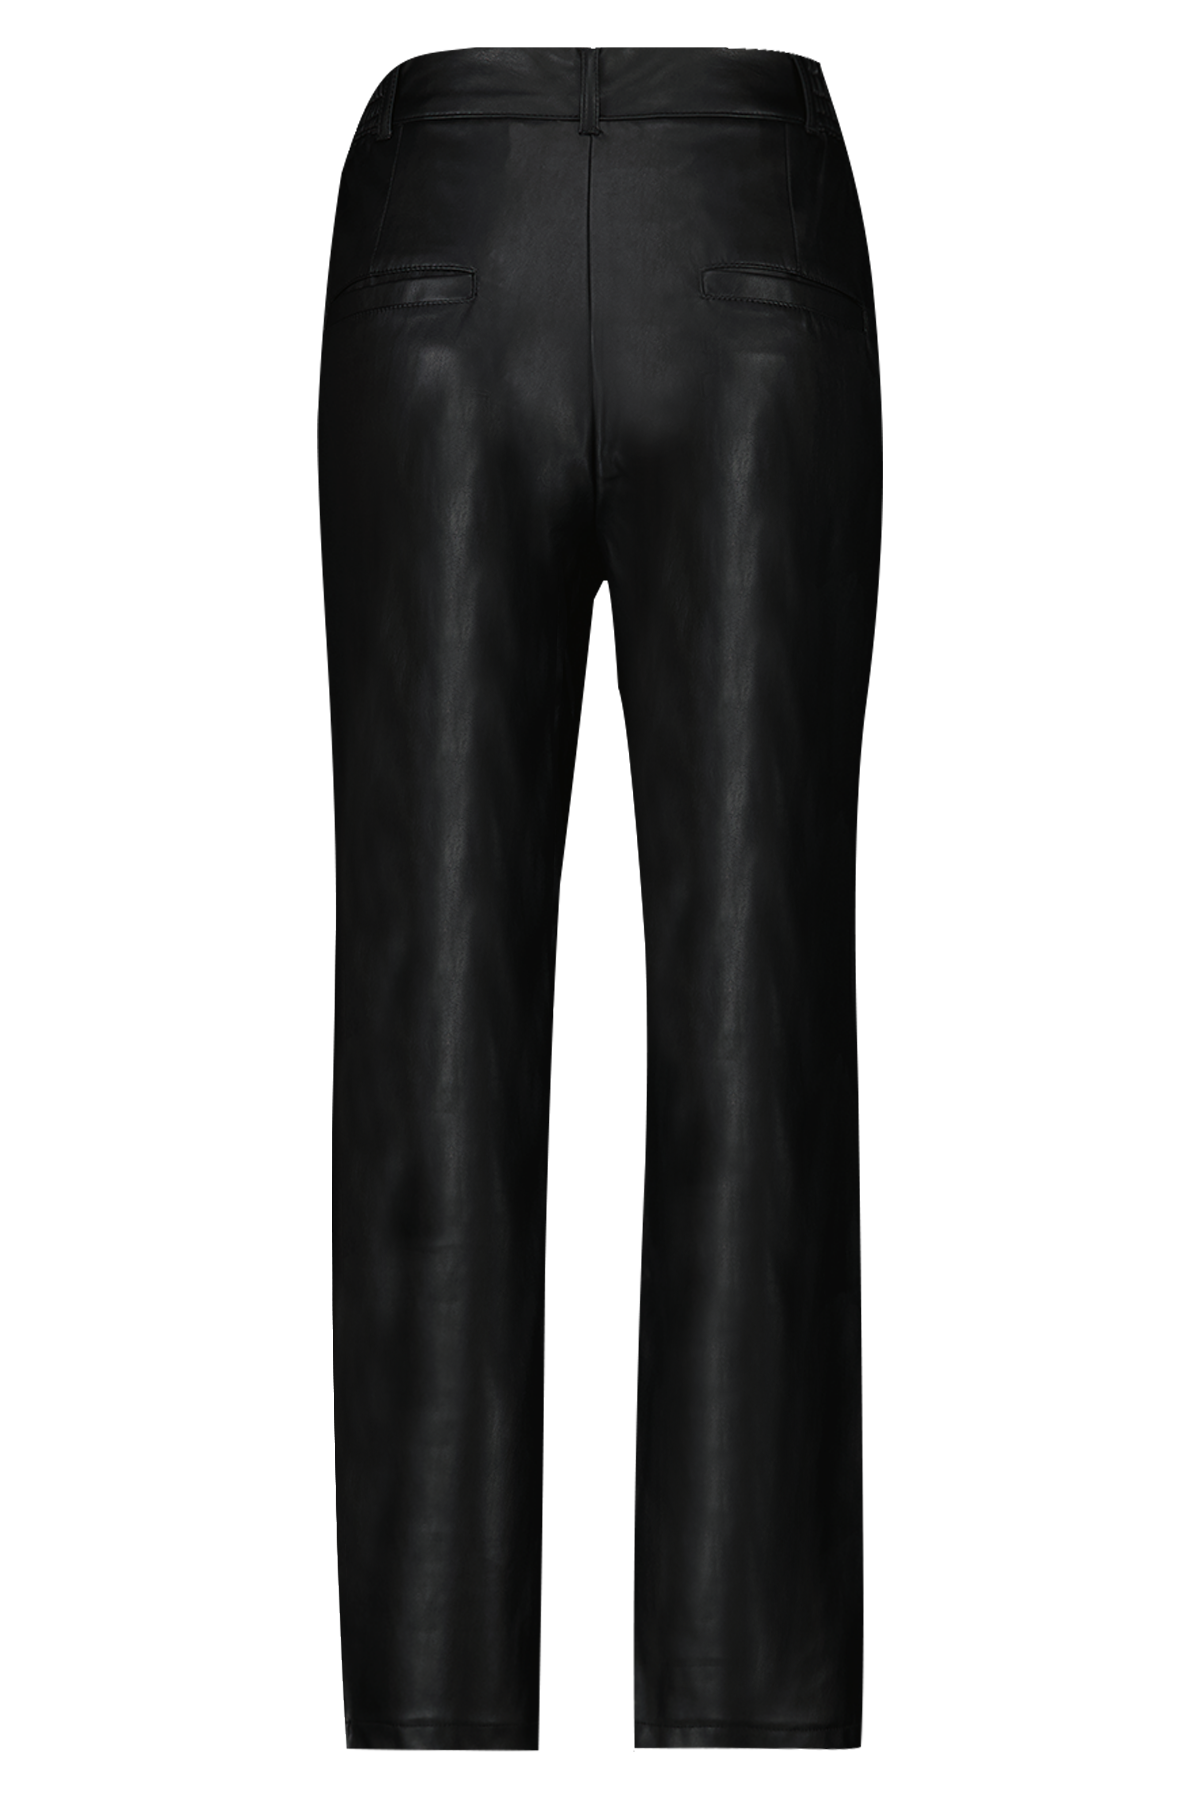 Pantalones de cuero sintético image 2